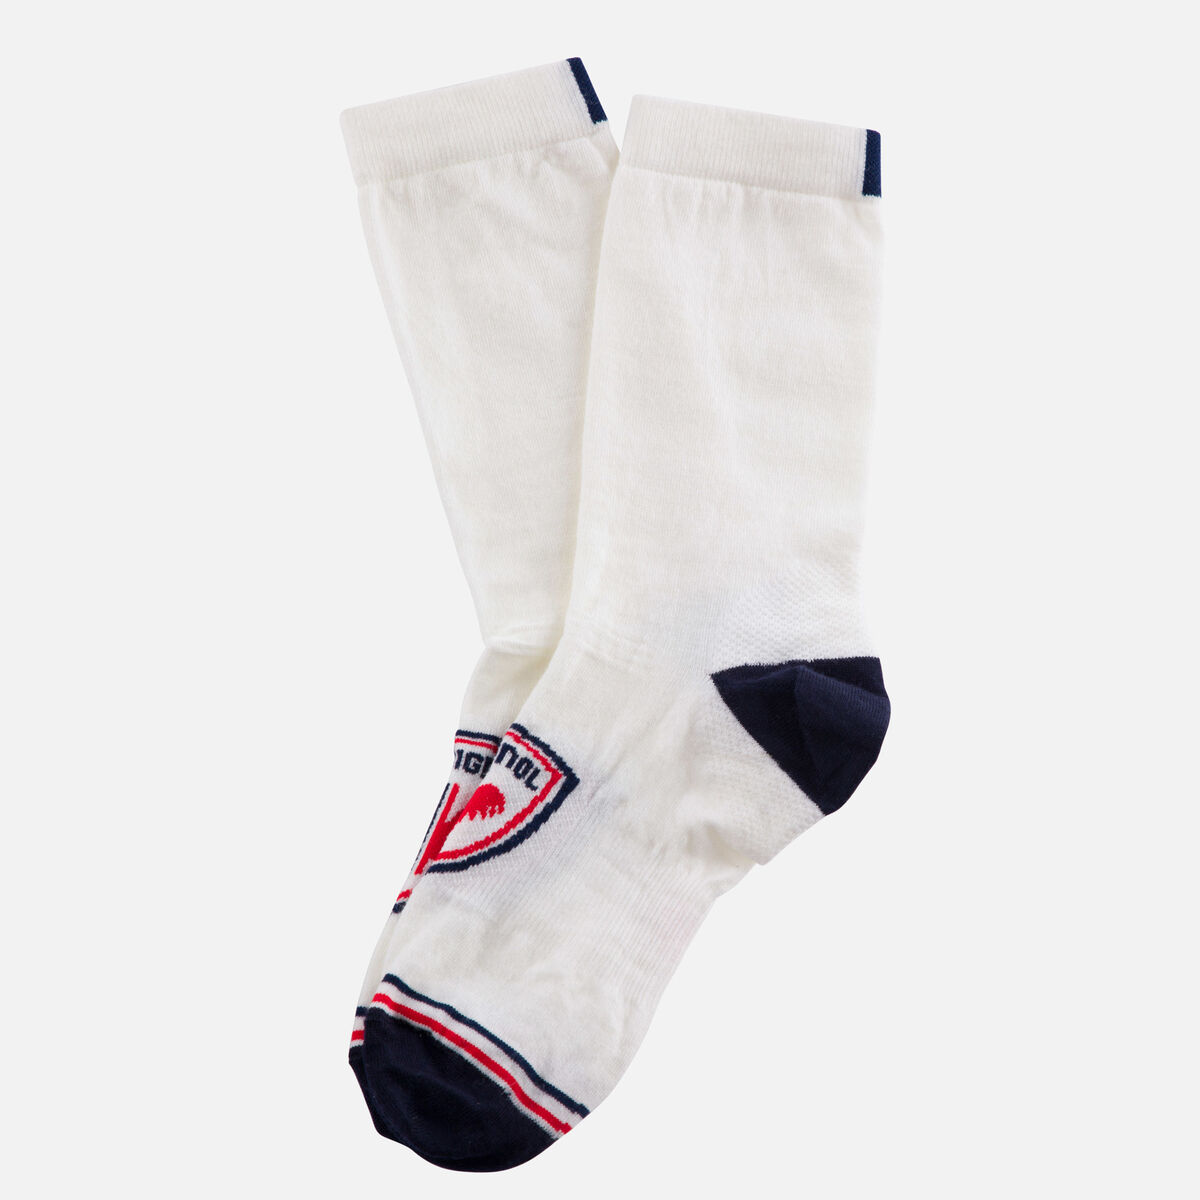 Lifestyle-Socken für Herren